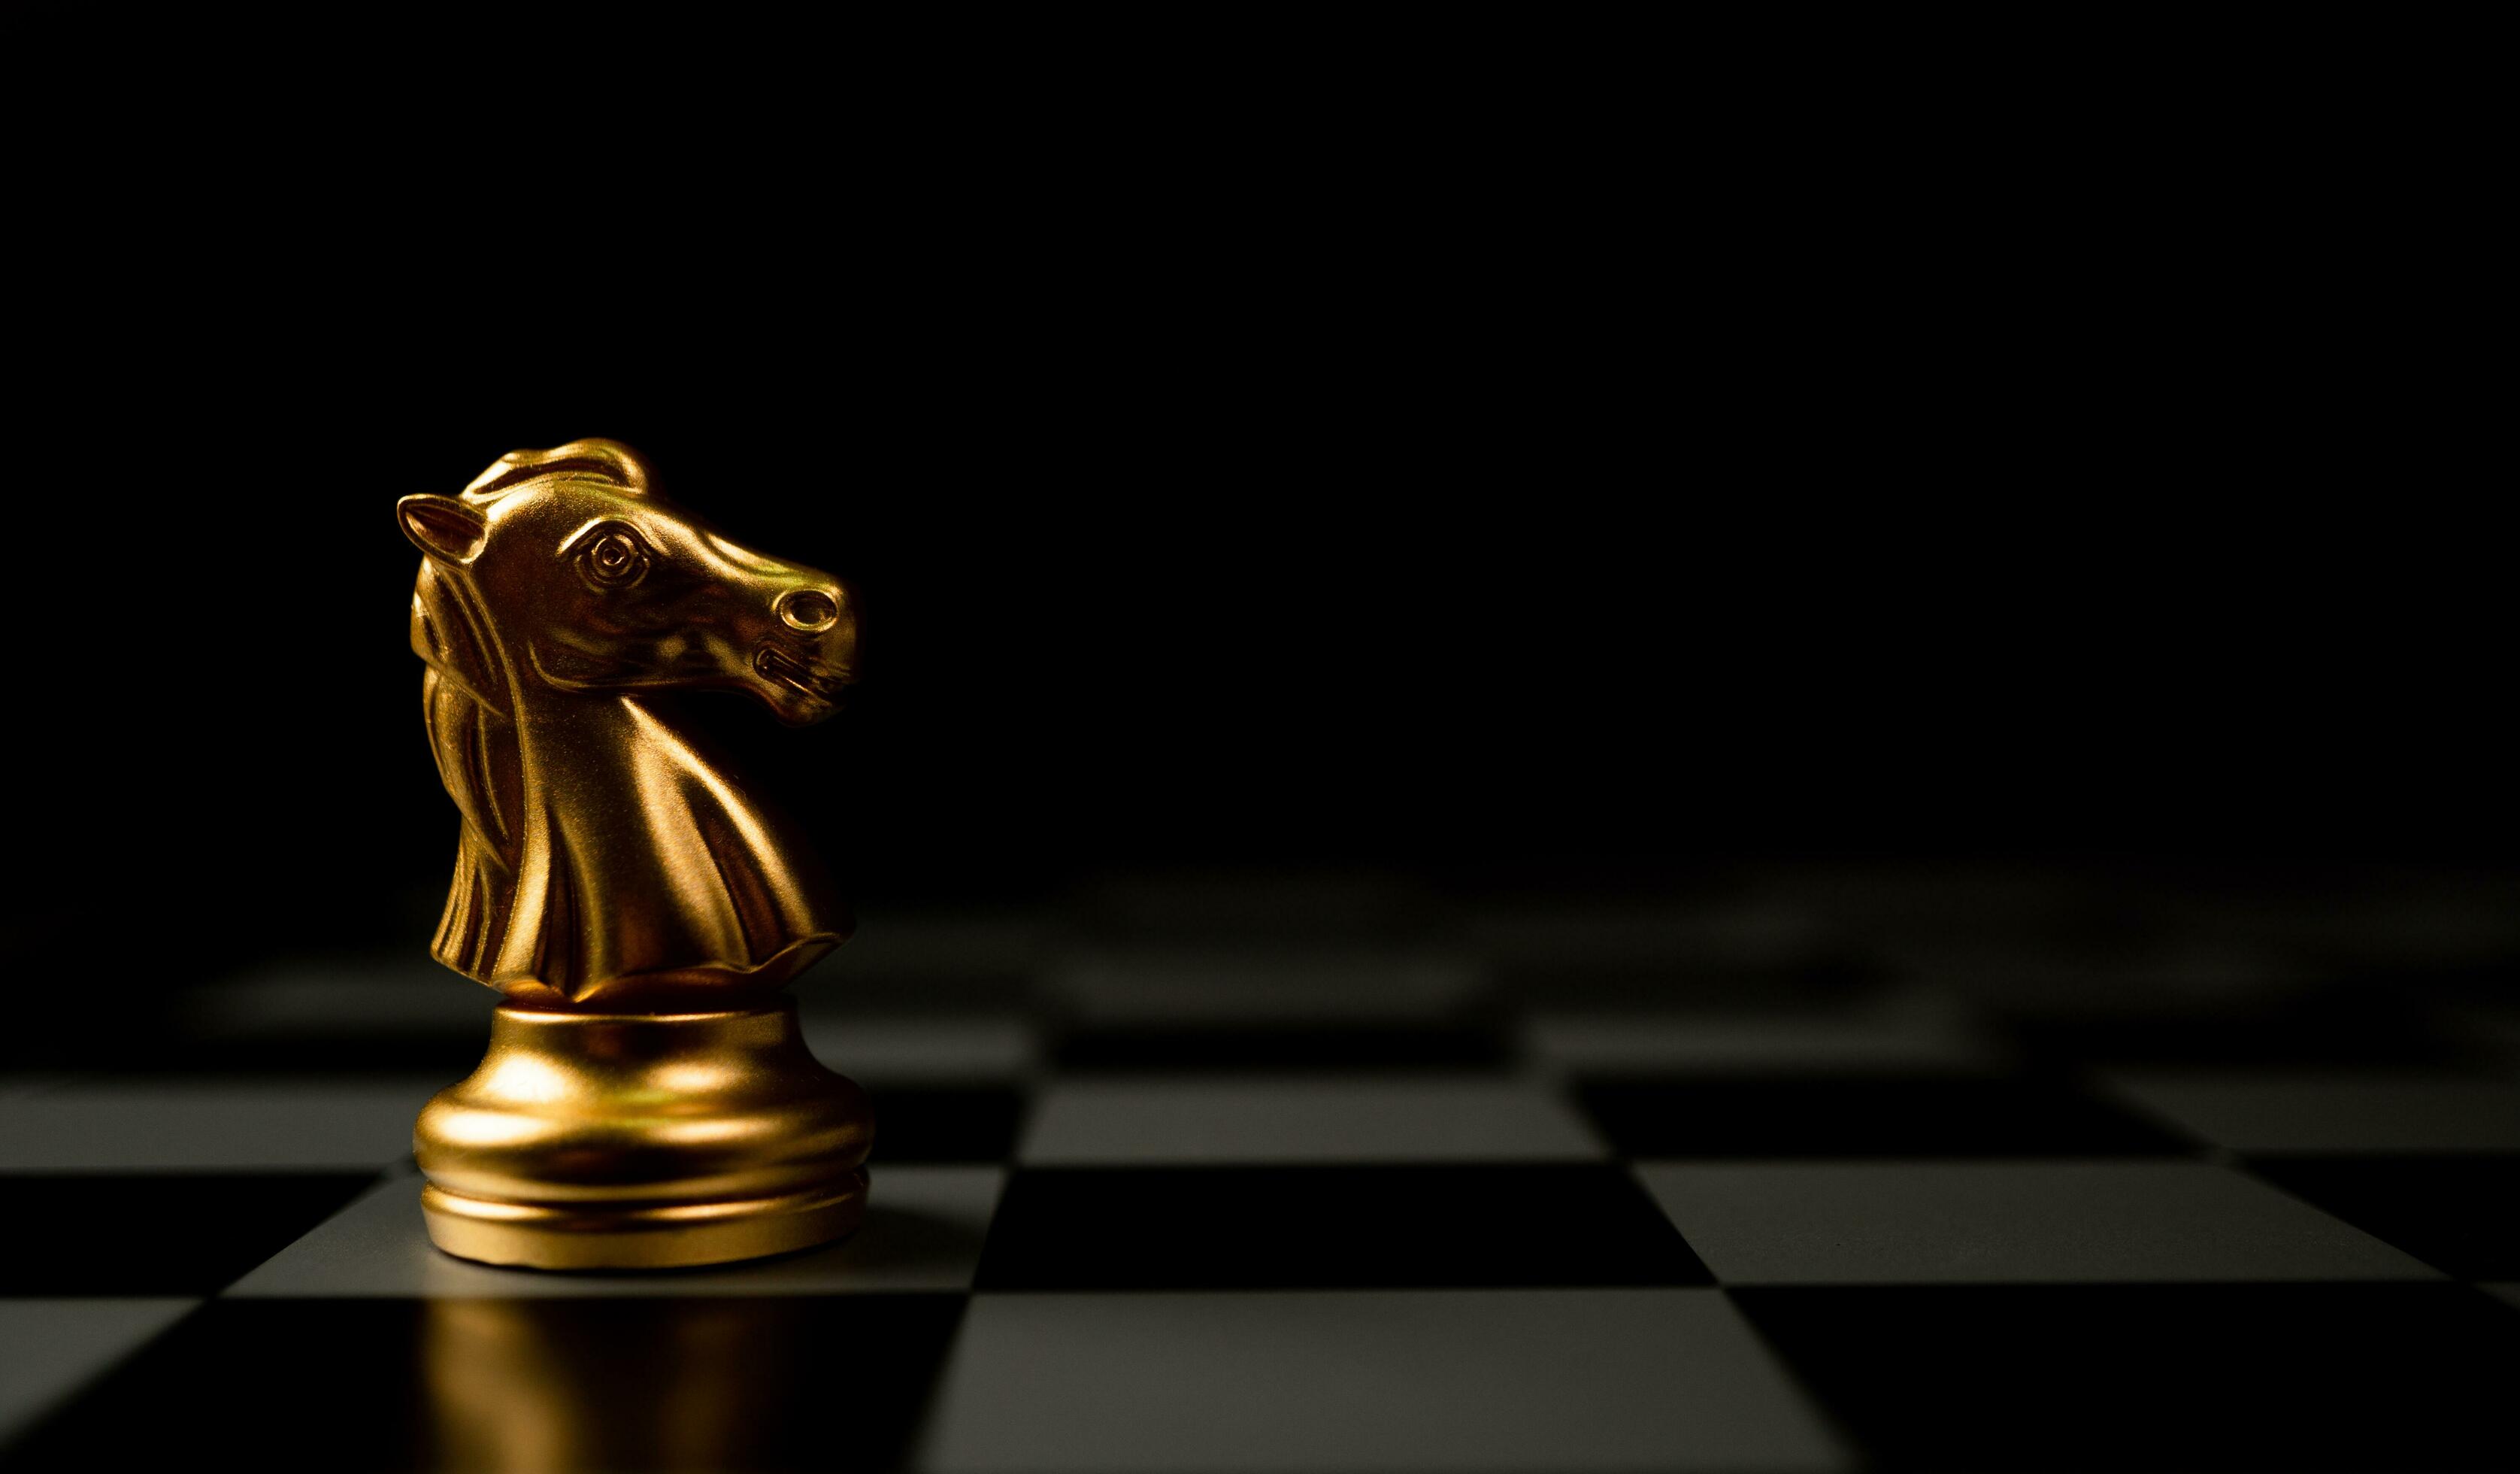 Rei do xadrez dourado sozinho no tabuleiro de xadrez